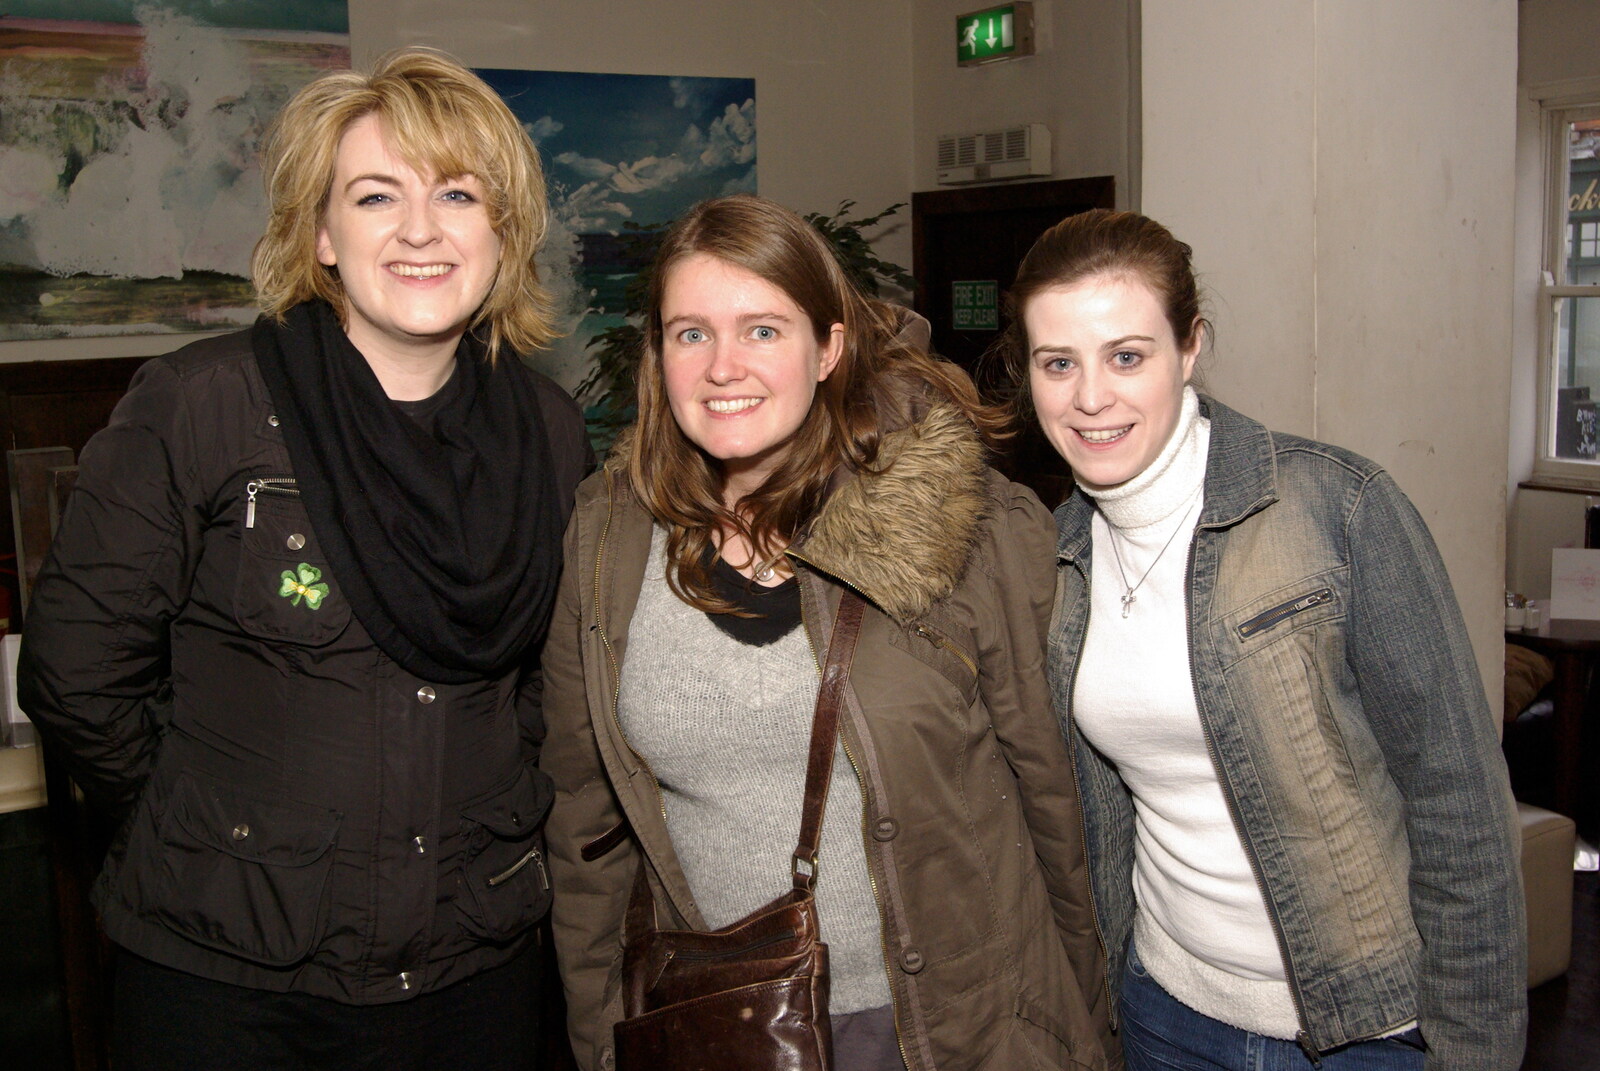 Easter in Dublin, Ireland - 21st March 2008: Isobel and Jen plus a school friend